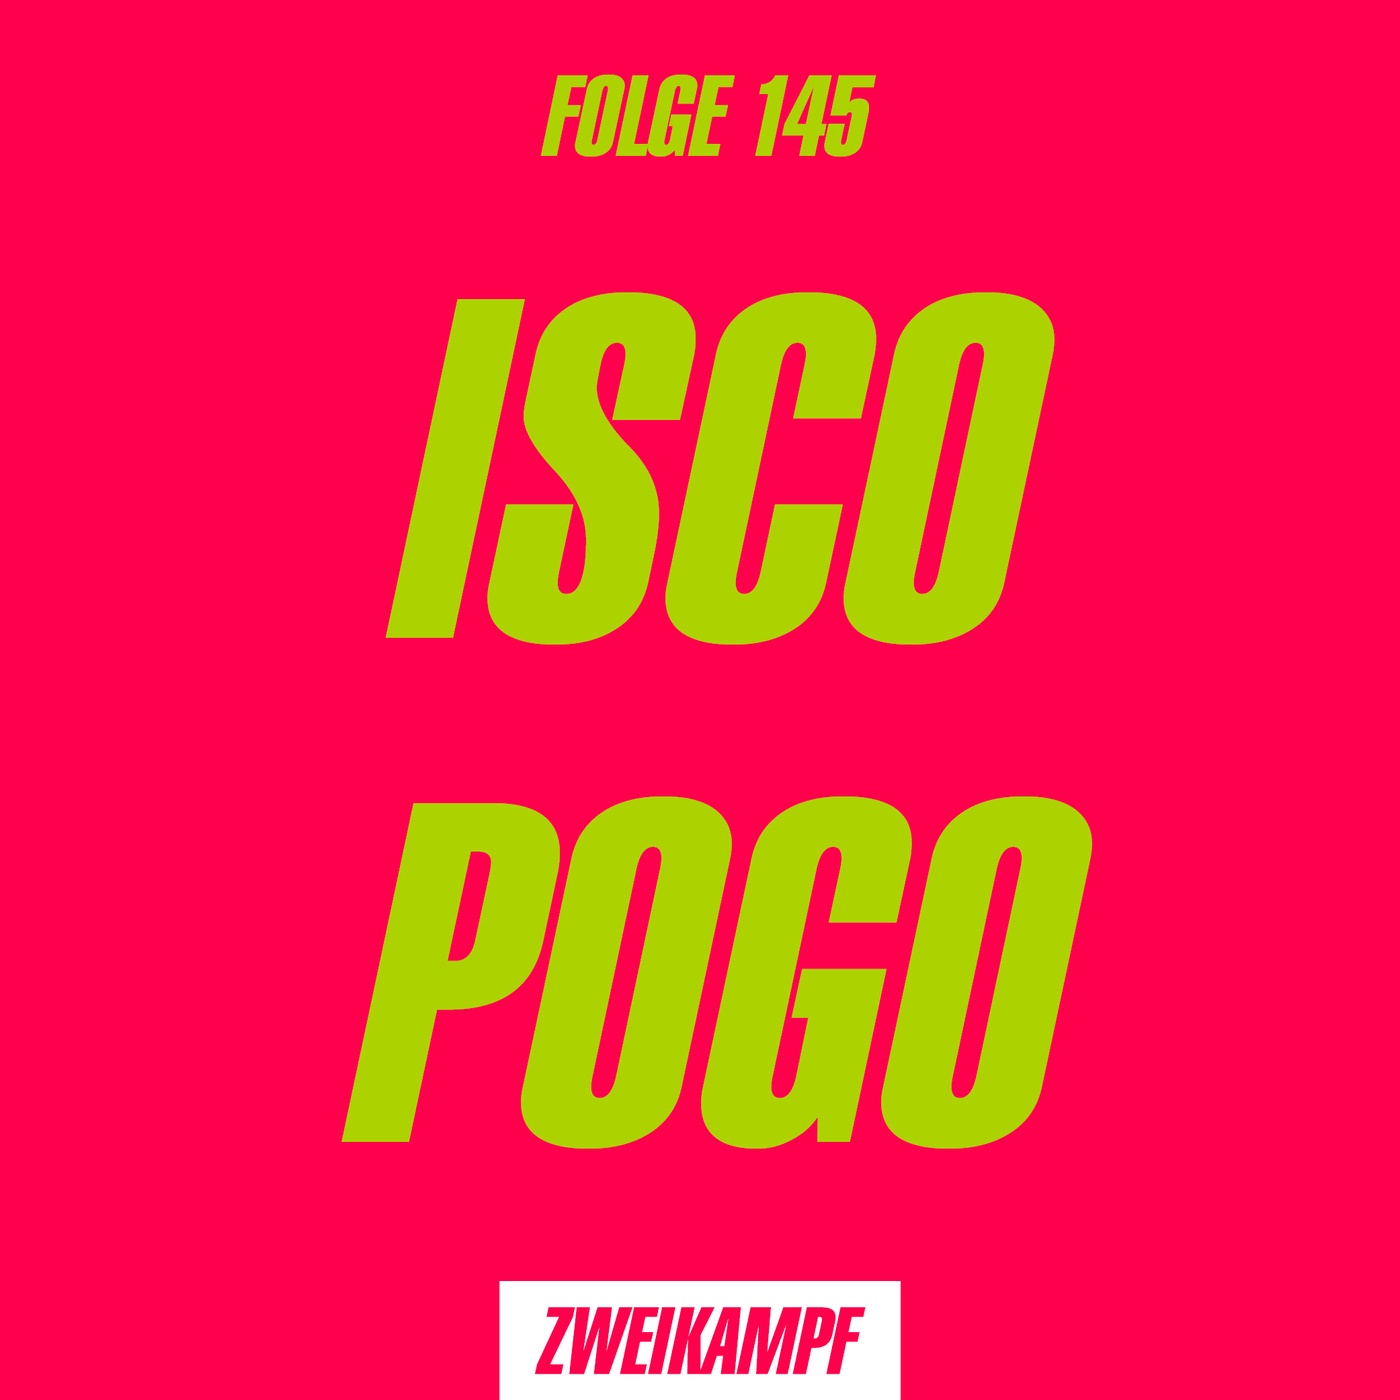 Folge 145: Isco Pogo